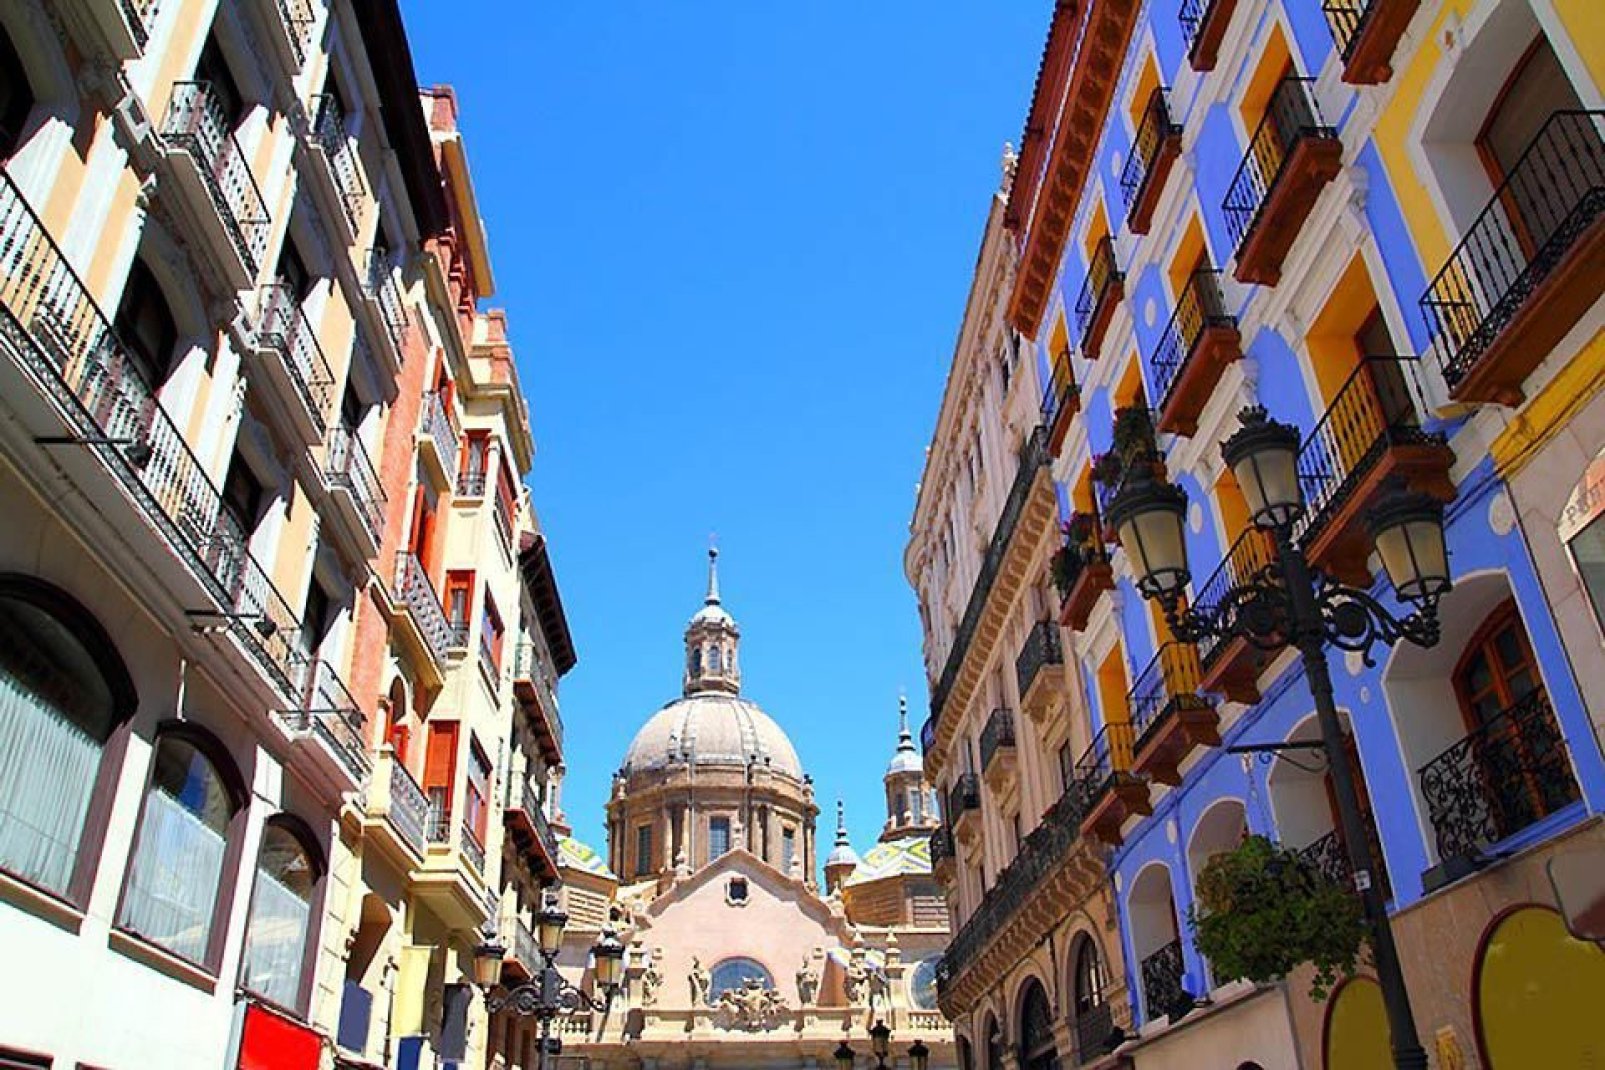 The university city of Zaragoza boasts a unique architectural heritage.